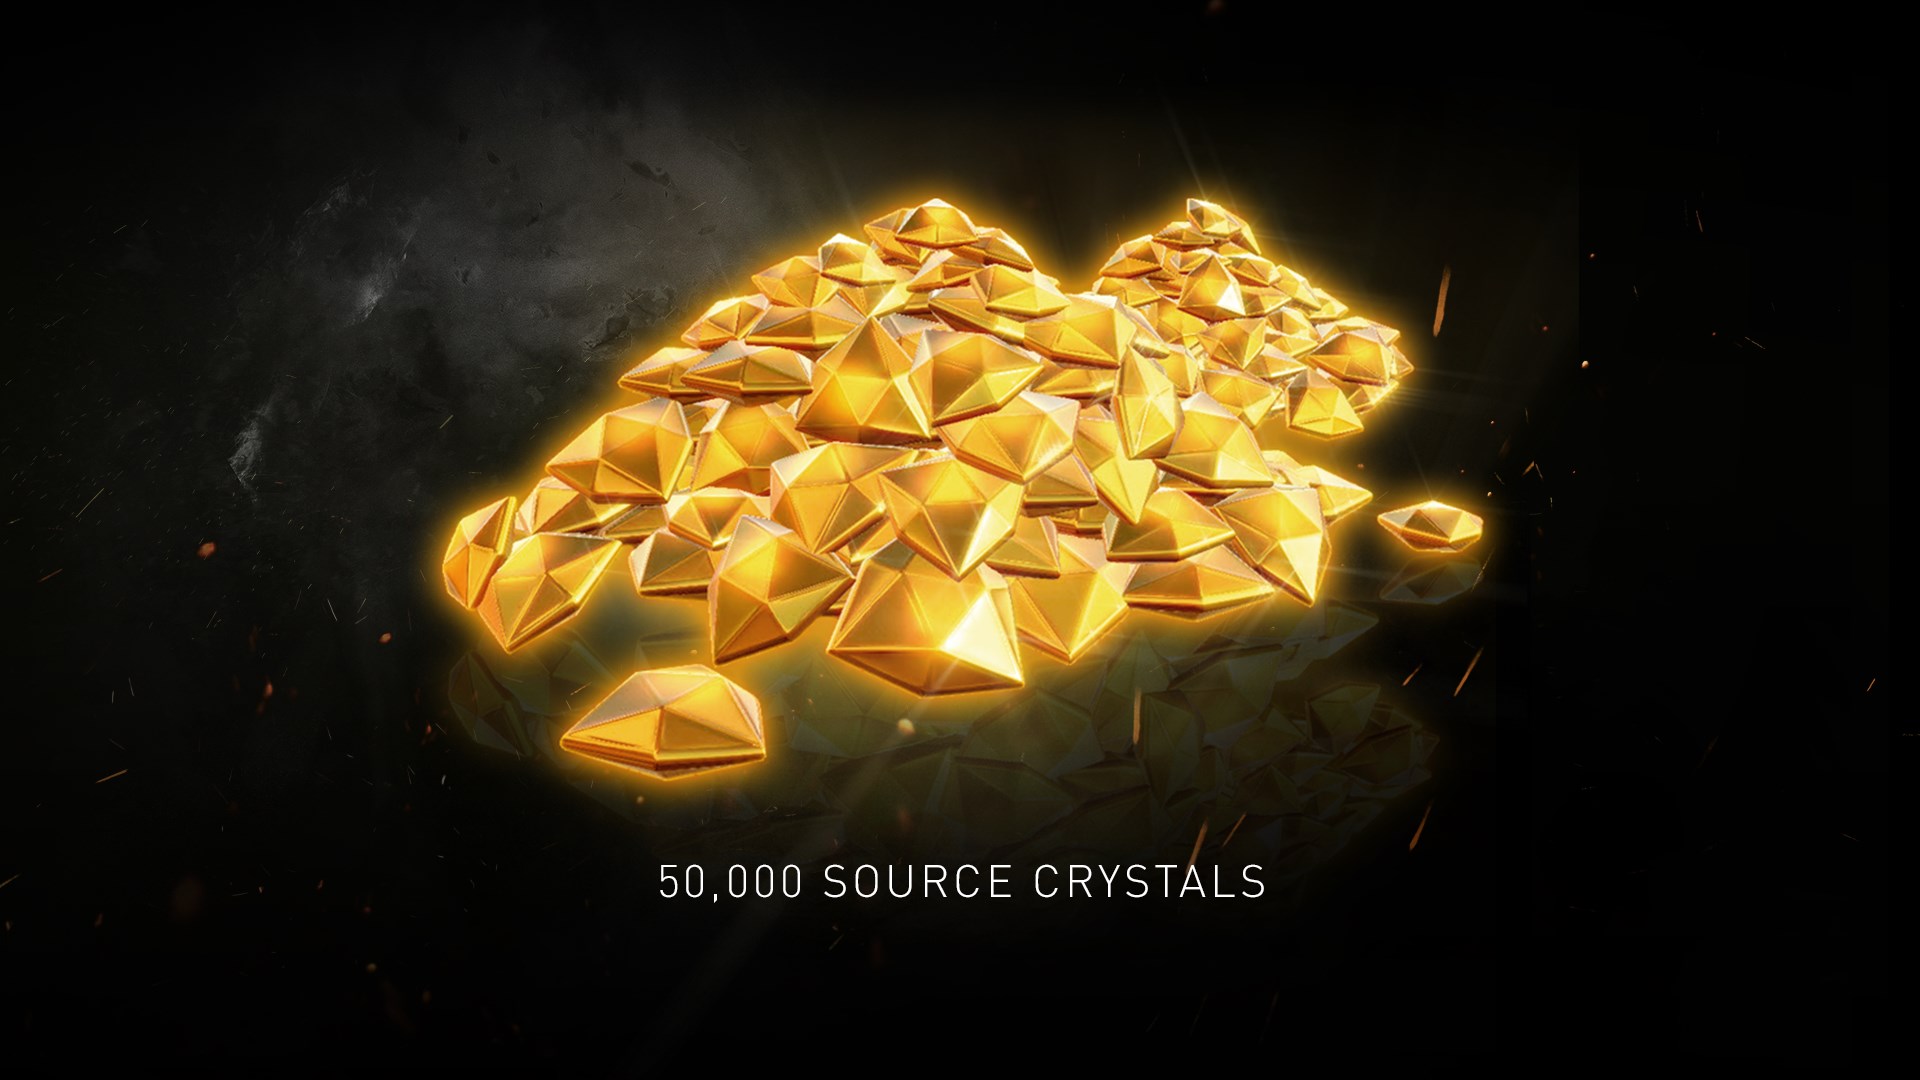 injustice 2 source crystals